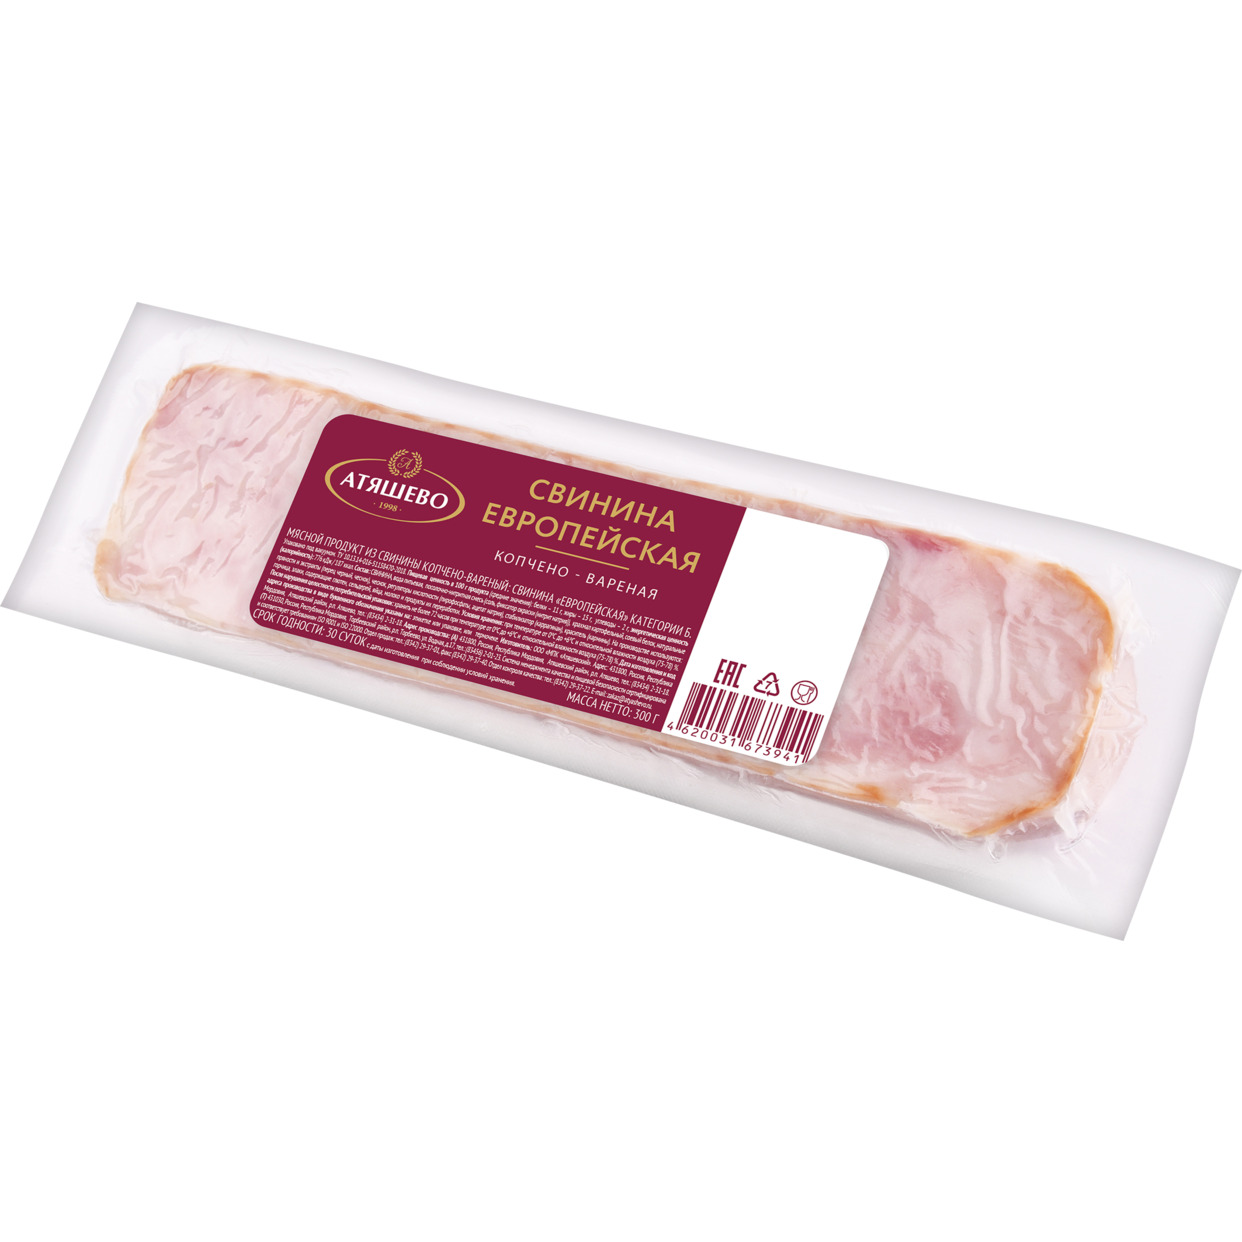 Мясной продукт из свинины копчено-вареный: свинина «Европейская» категории Б. ТМ 